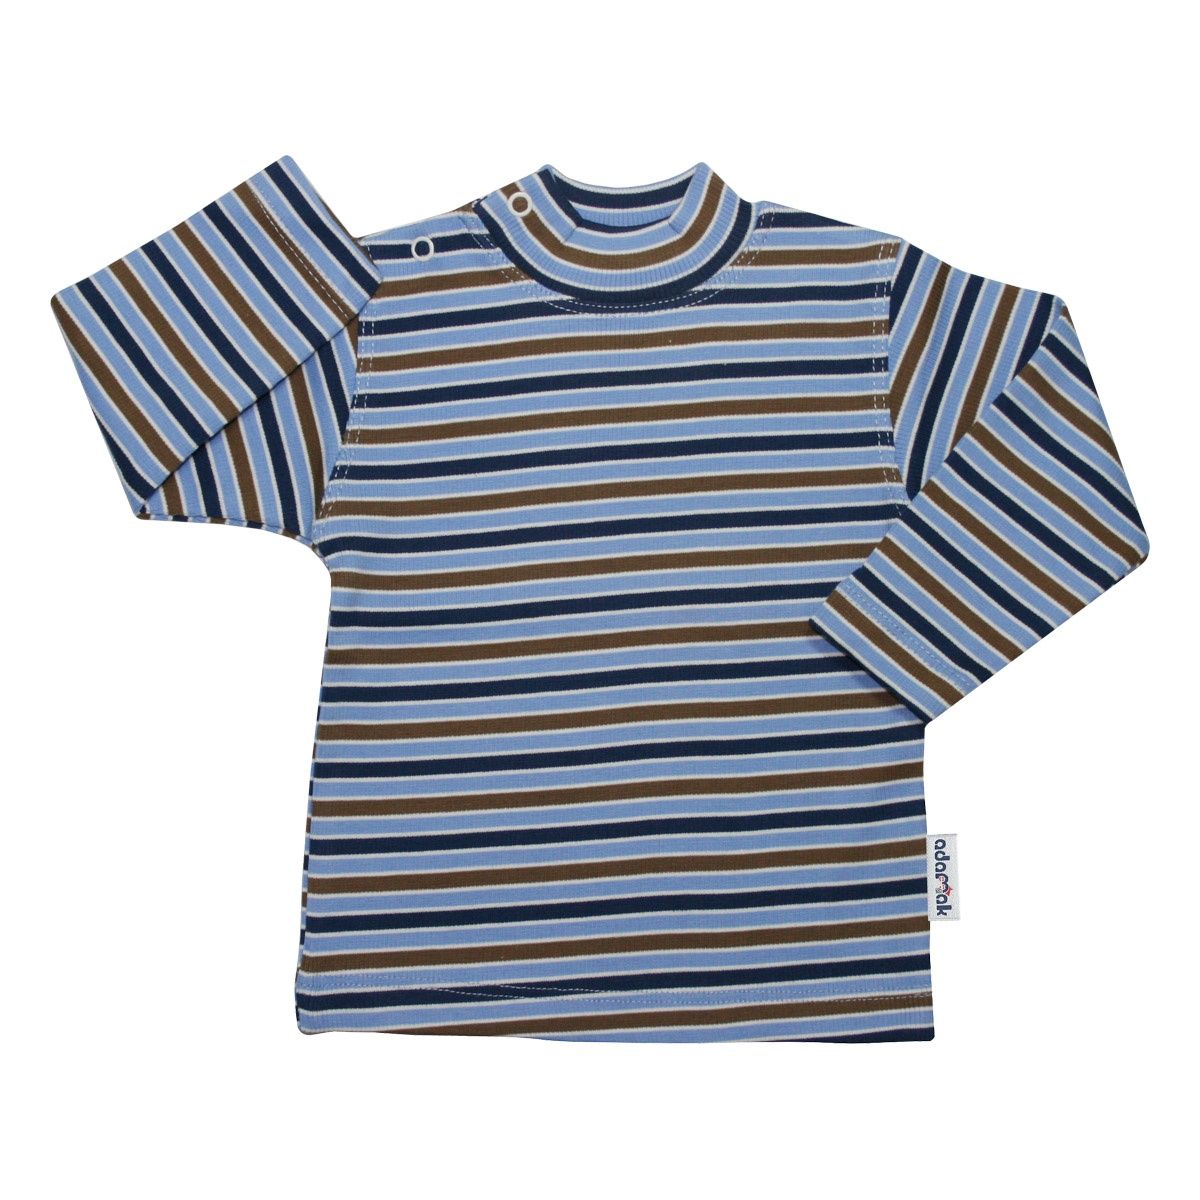  تی شرت آستین بلند نوزادی آدمک کد 01-143201 -  - 1